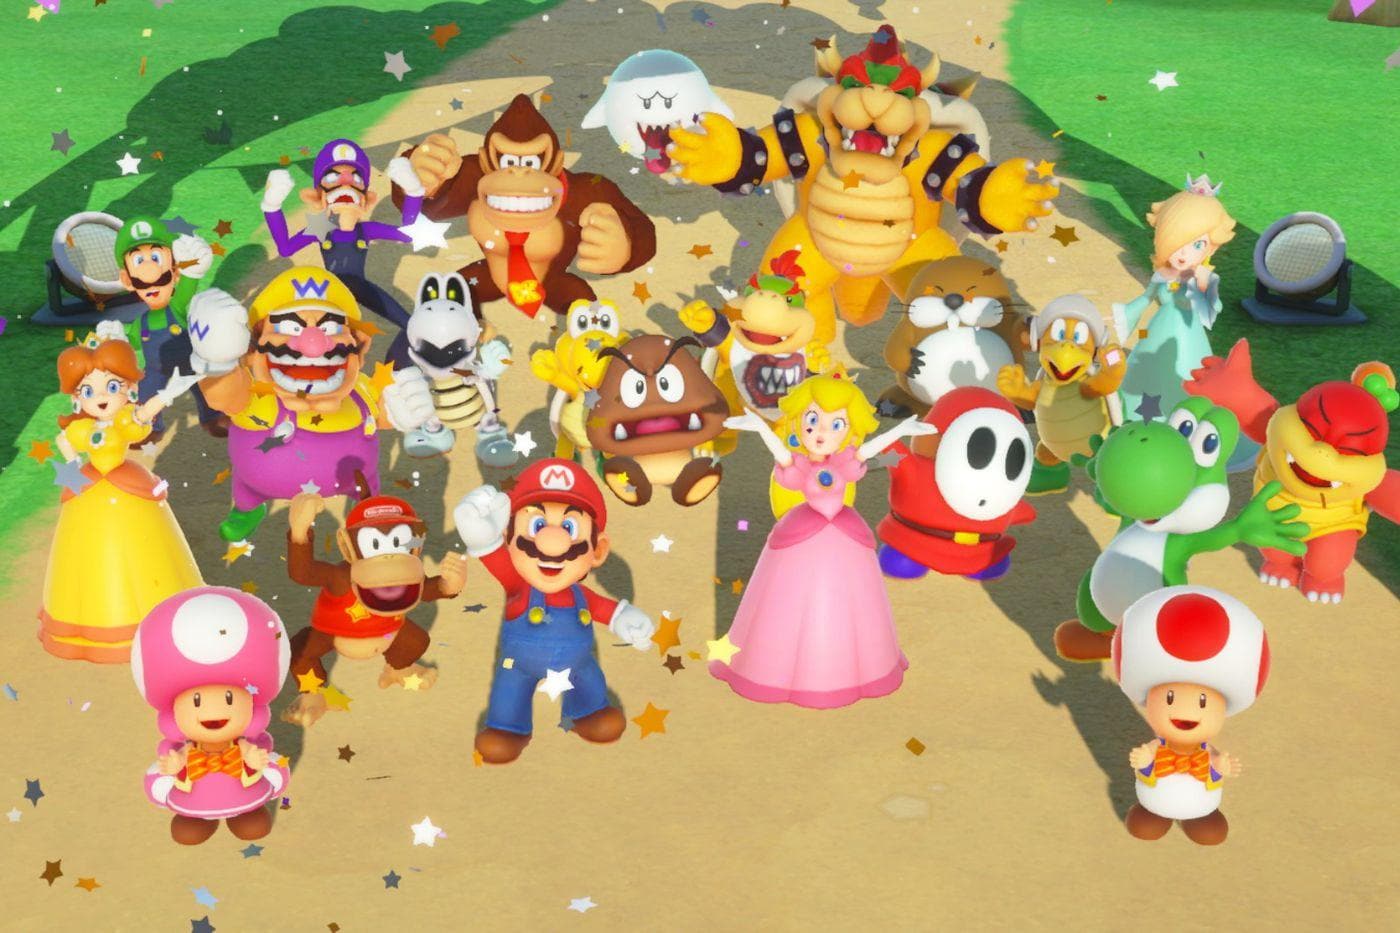 Super Mario Party - Nintendo Switch - EXON - גיימינג ותוכנות - משחקים ותוכנות למחשב ולאקס בוקס!